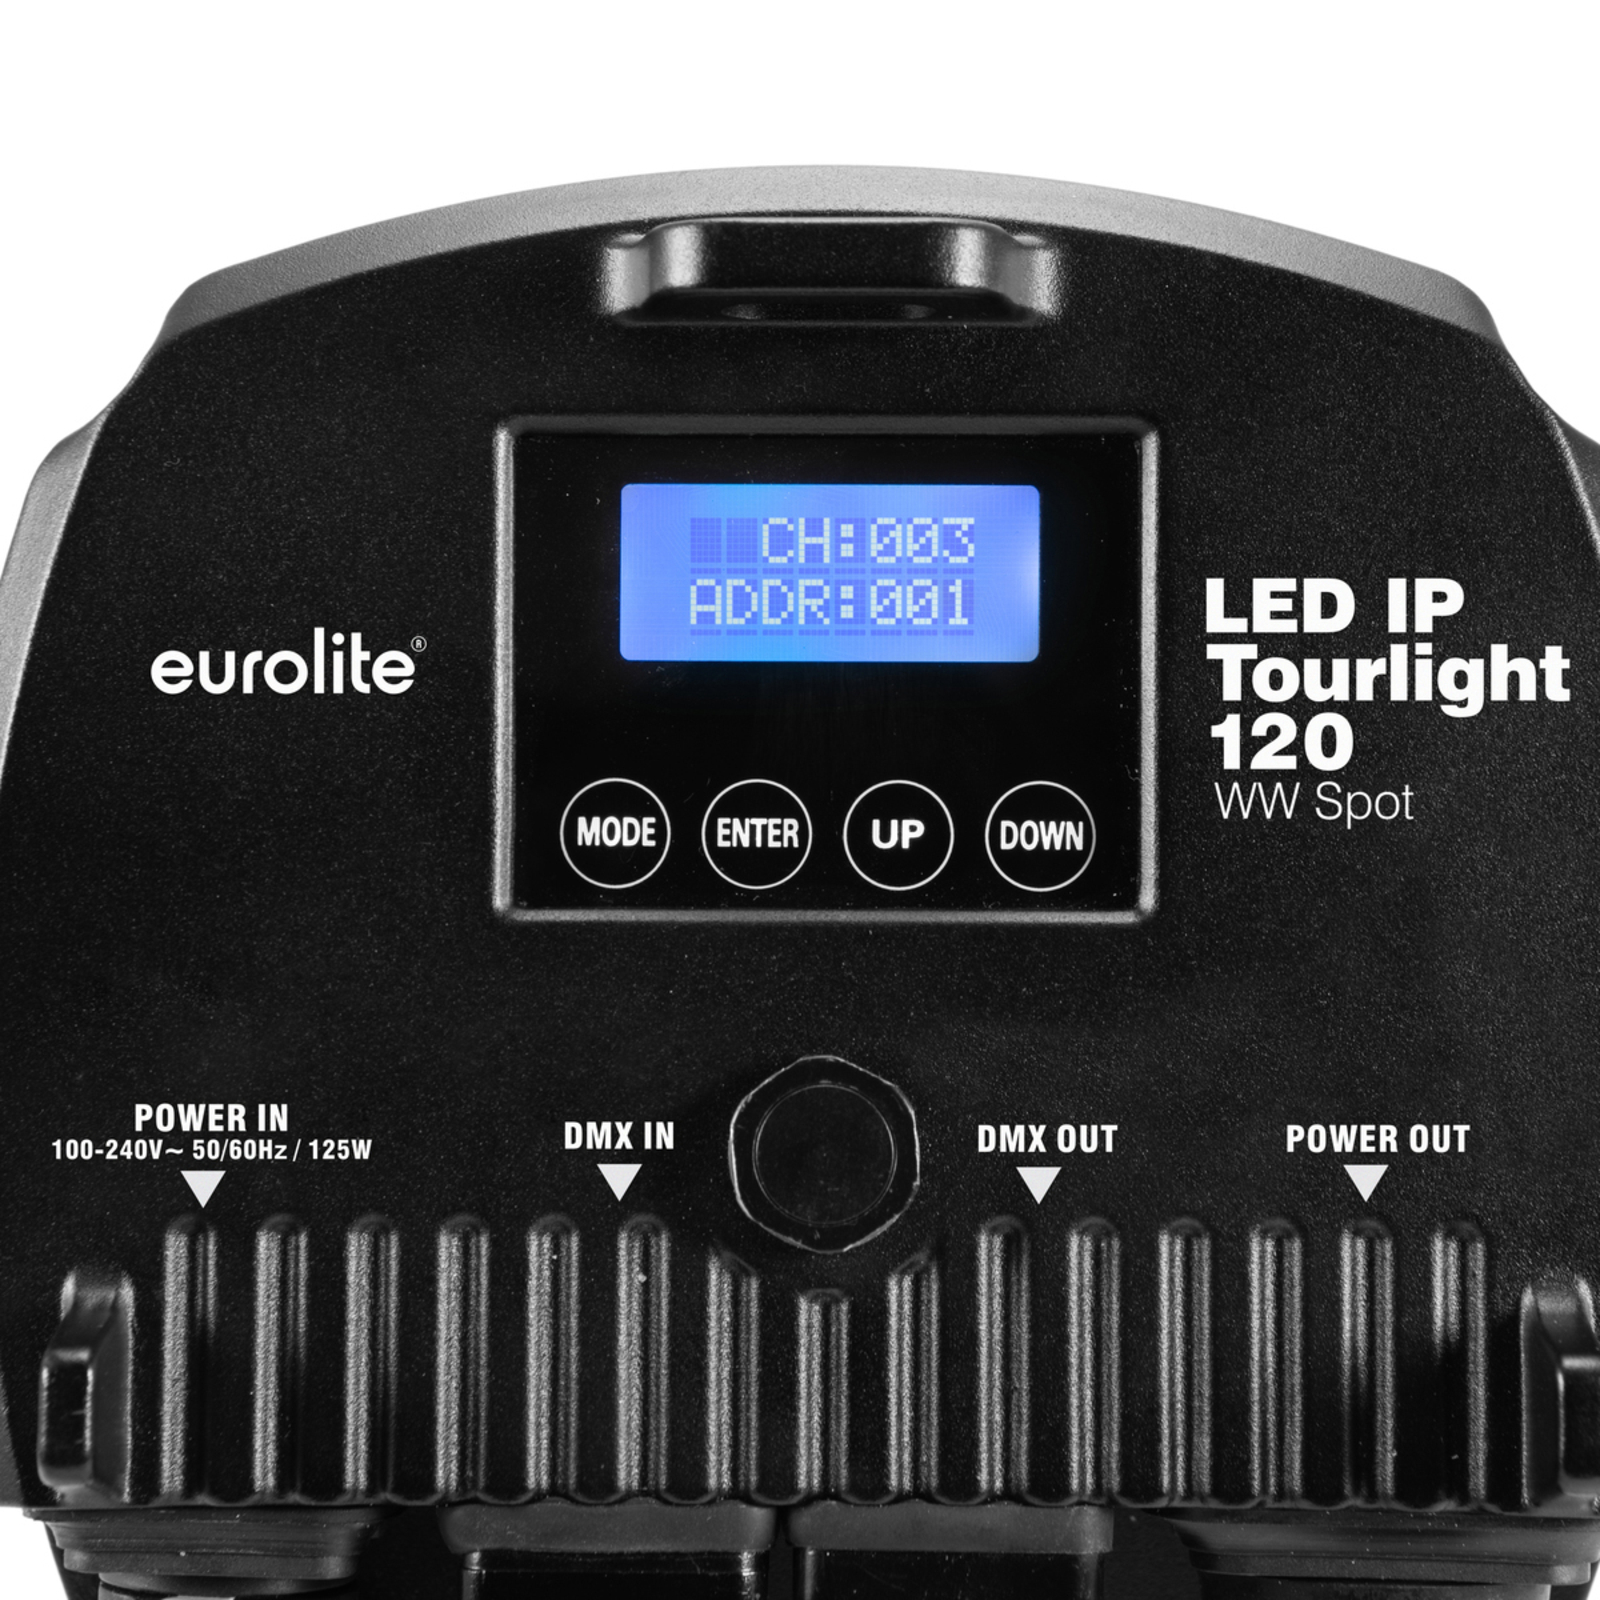 EUROLITE LED IP Tourlight 120 phares 3 200 K